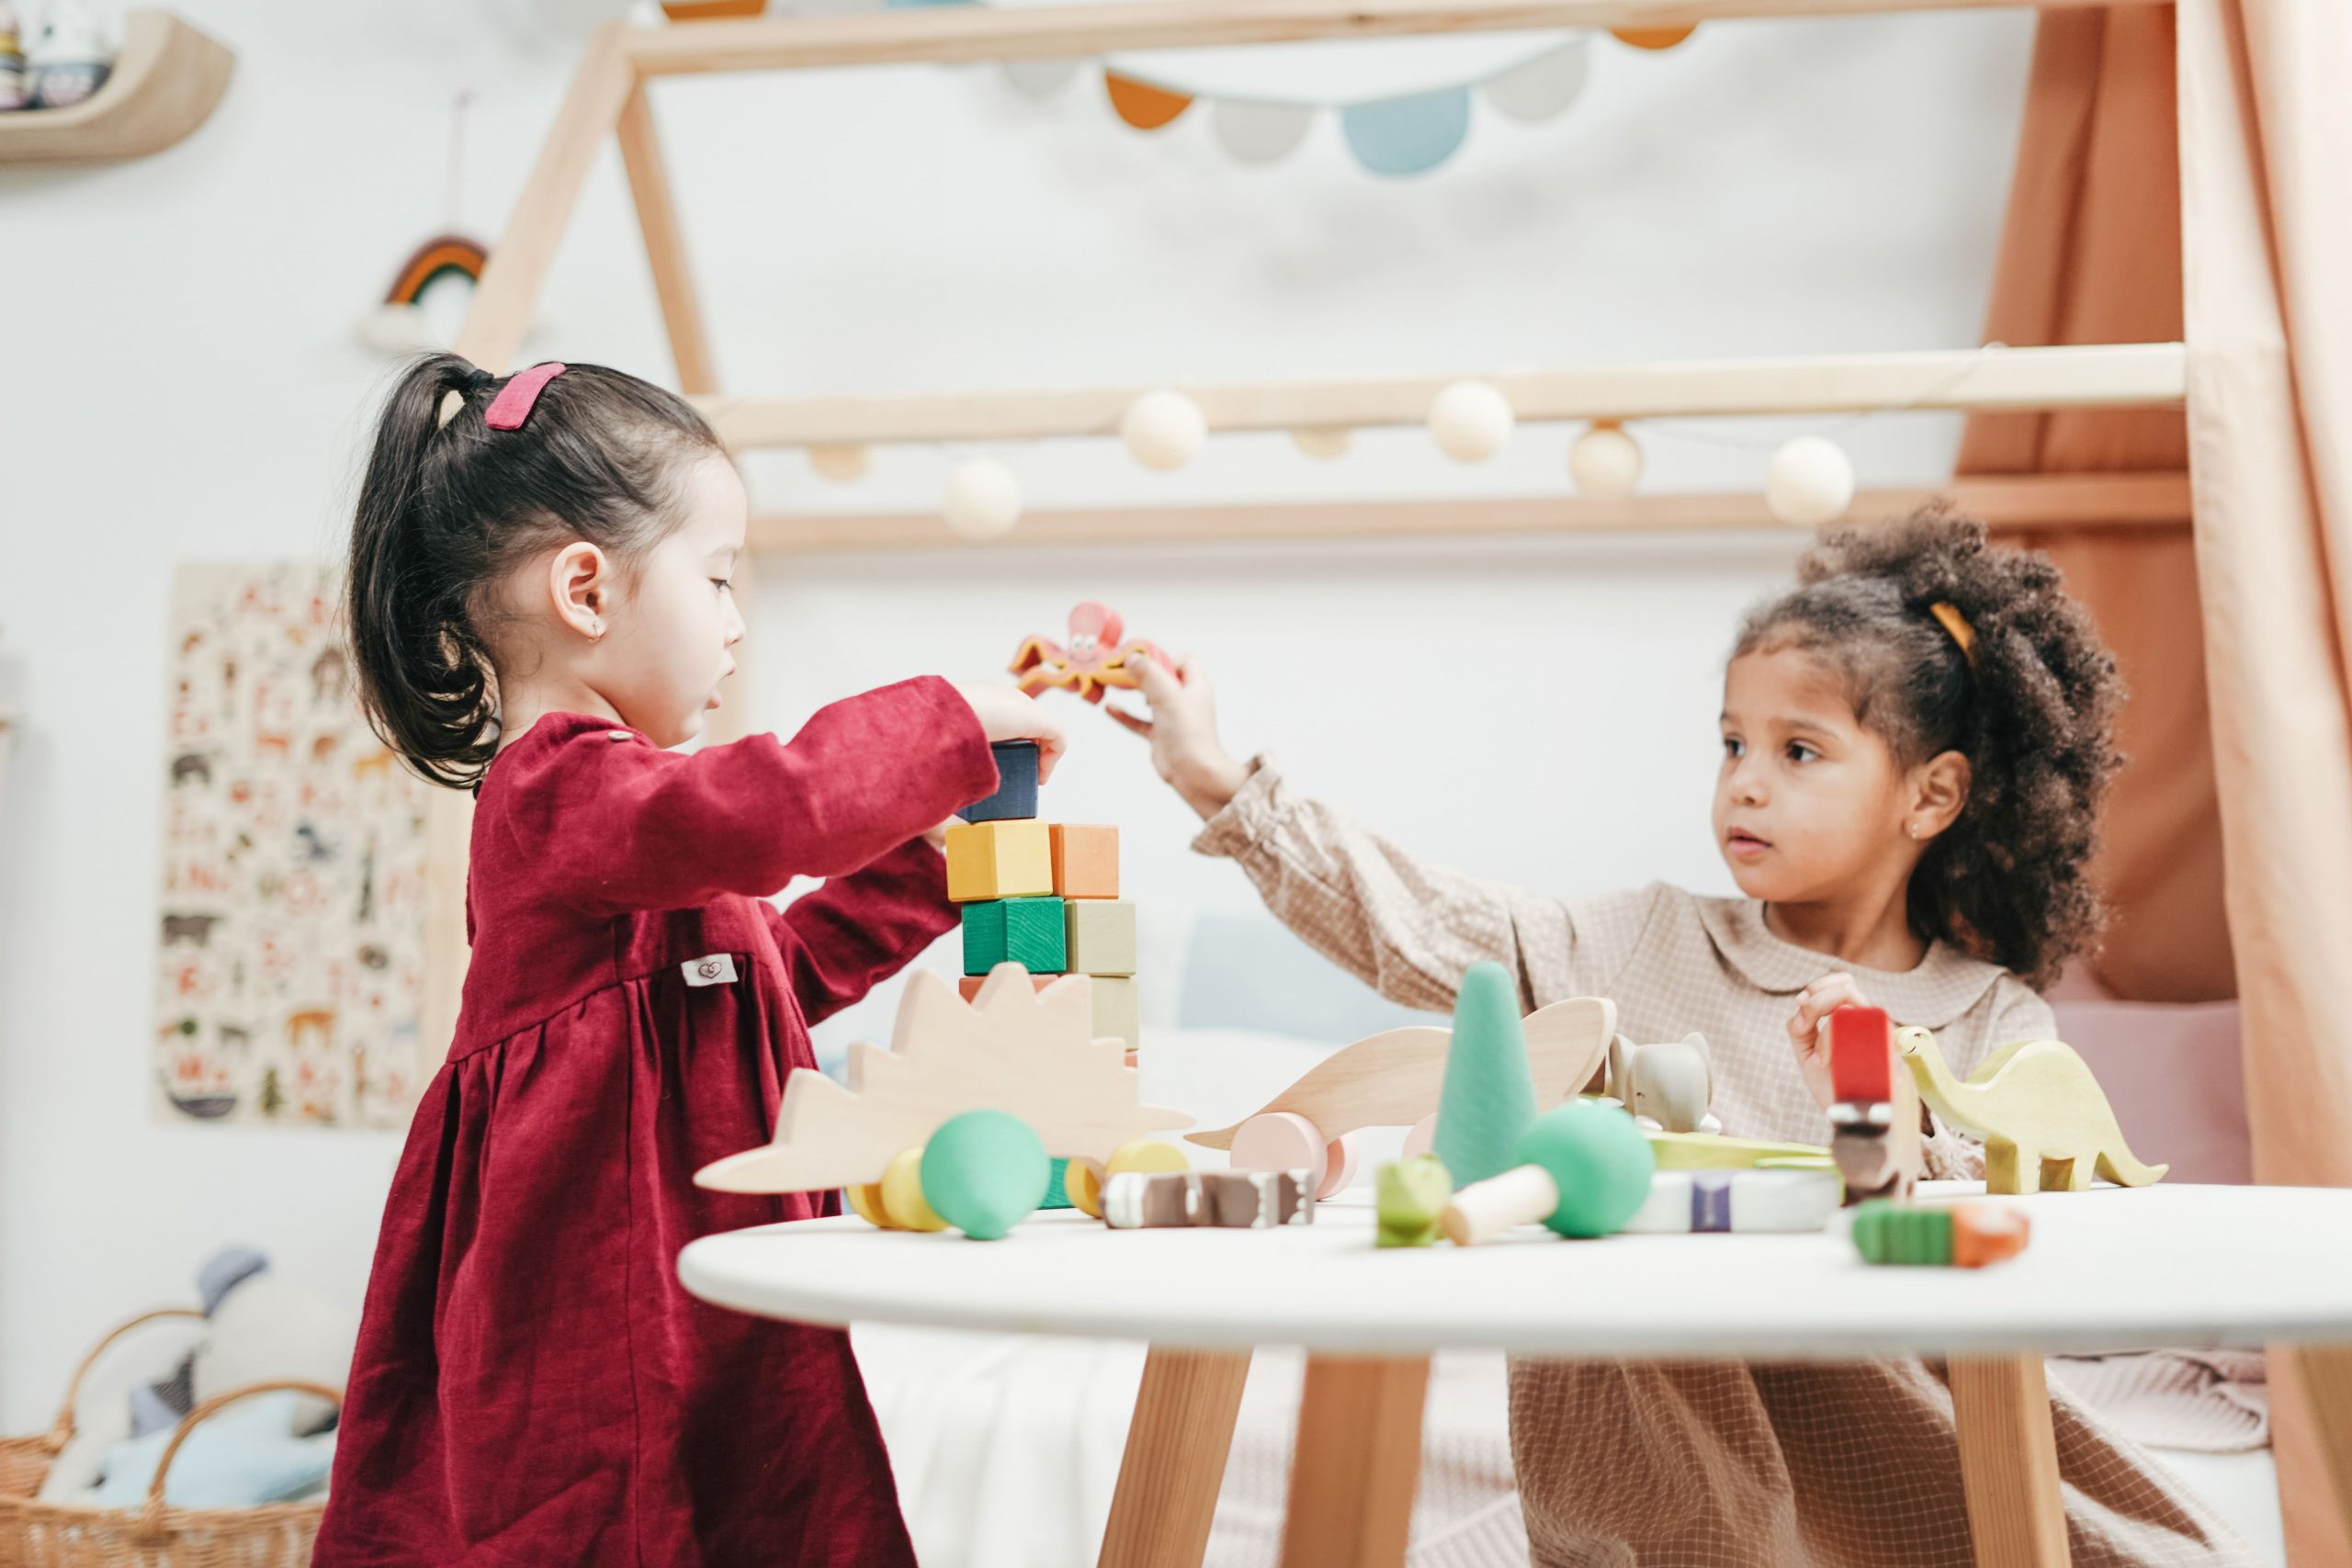 ein Bild, das zwei kleine Mädchen zeigt, die gemeinsam mit Bauklötzen spielen Möglichkeit therapinum will bieten